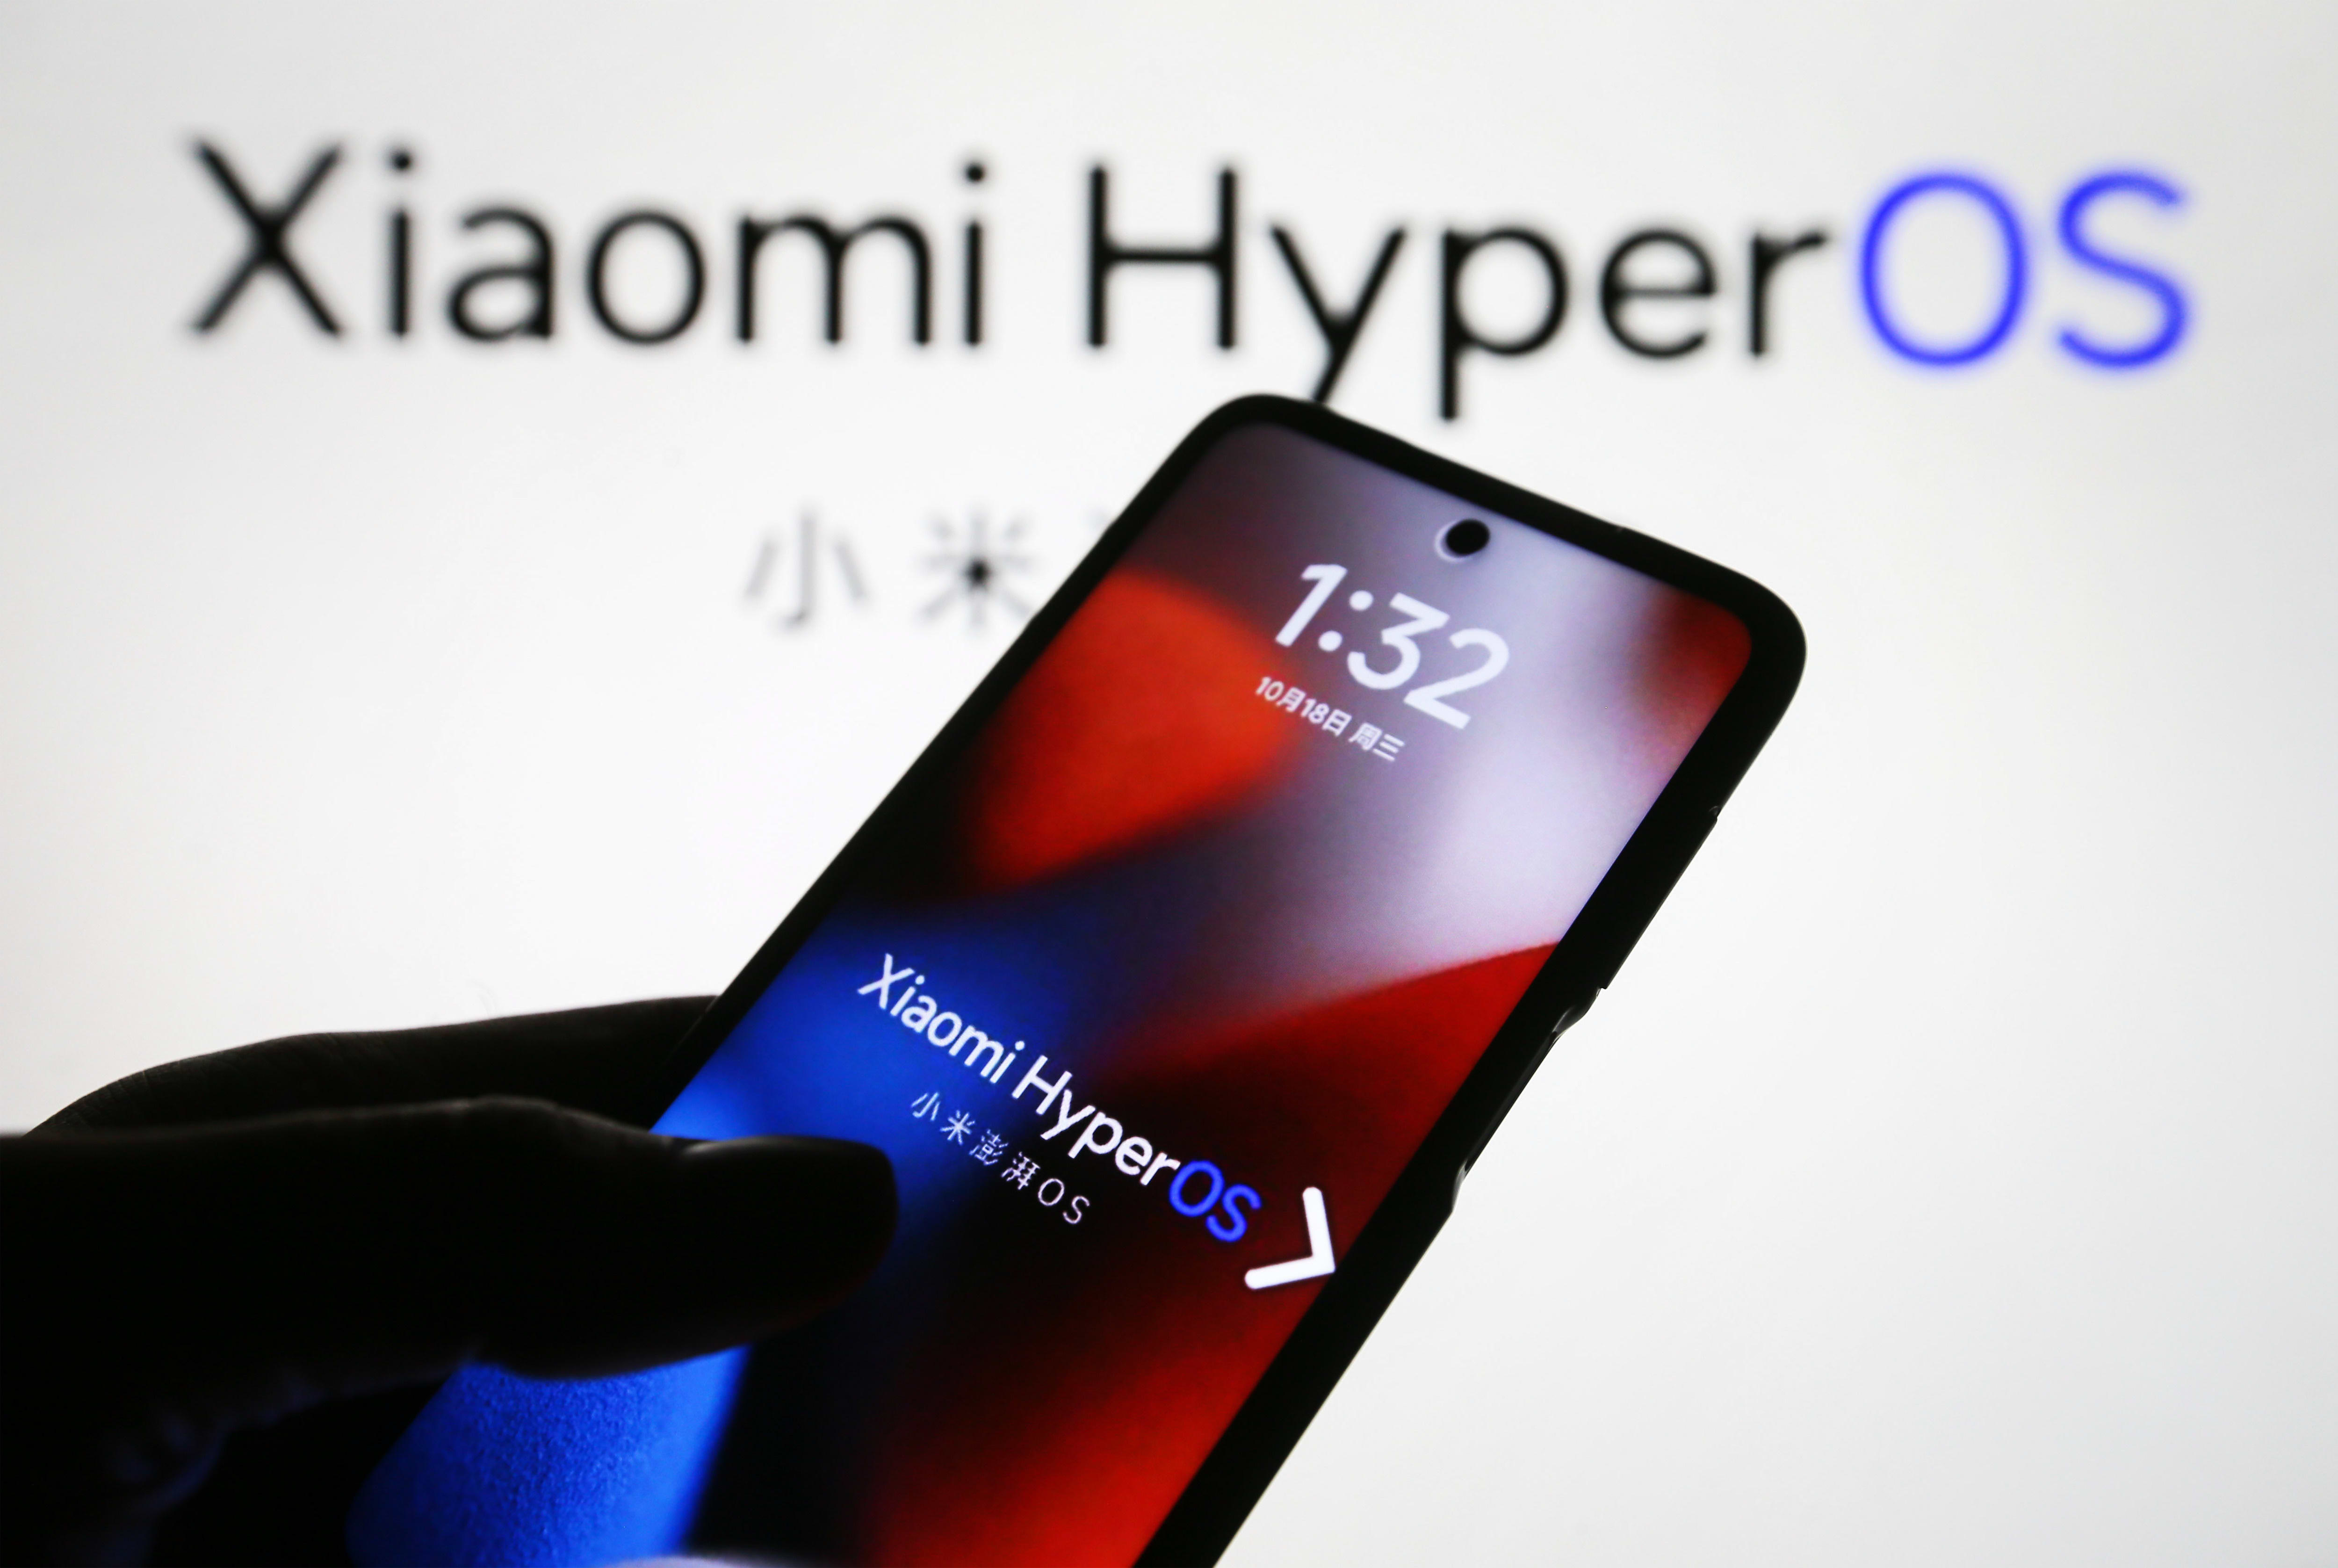 Chińska firma produkująca smartfony Xiaomi uruchamia HyperOS podczas planowania samochodu